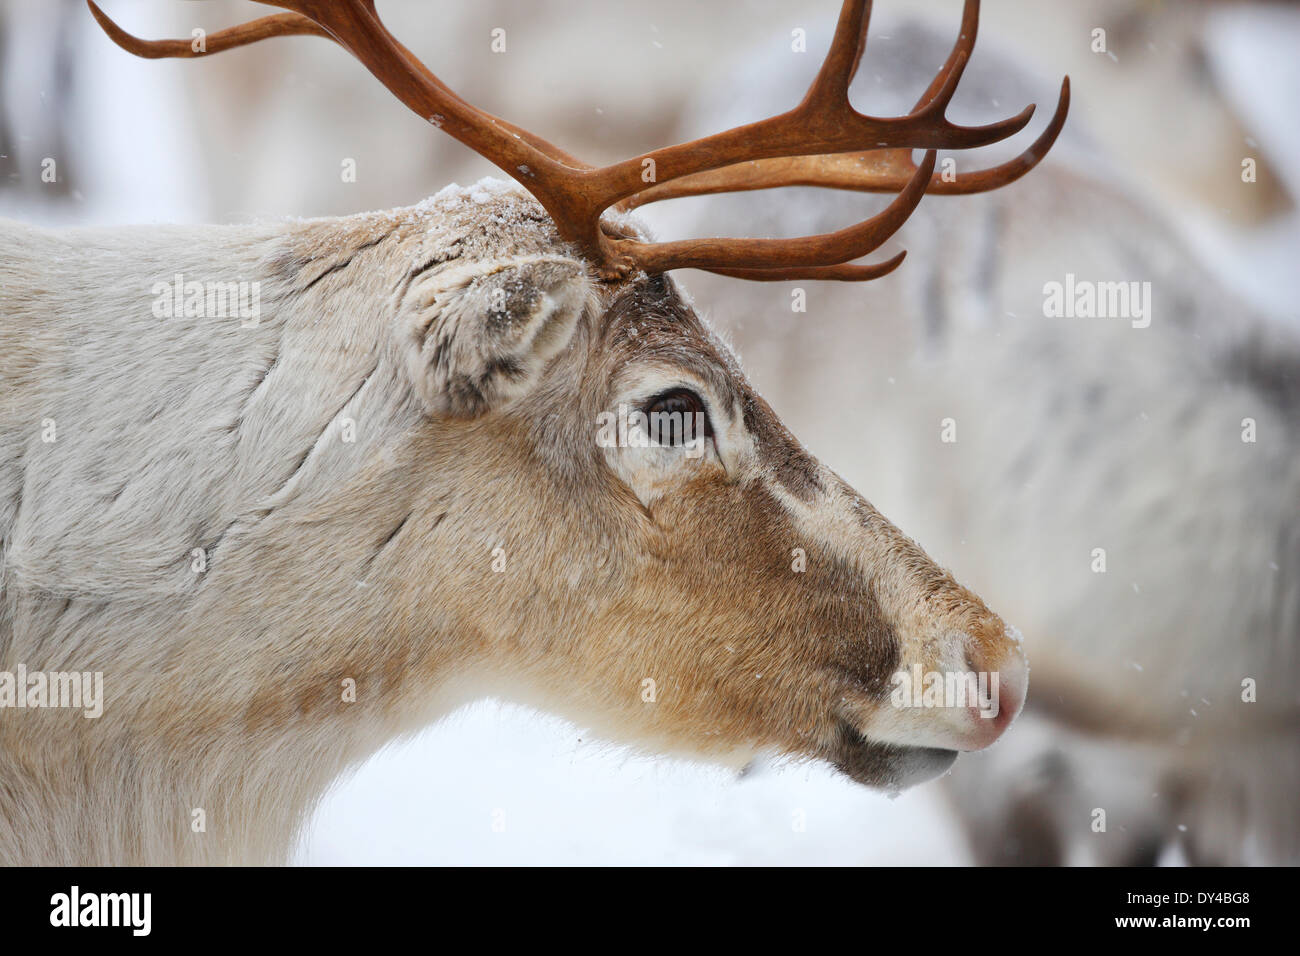 Reindeer close up Stock Photo